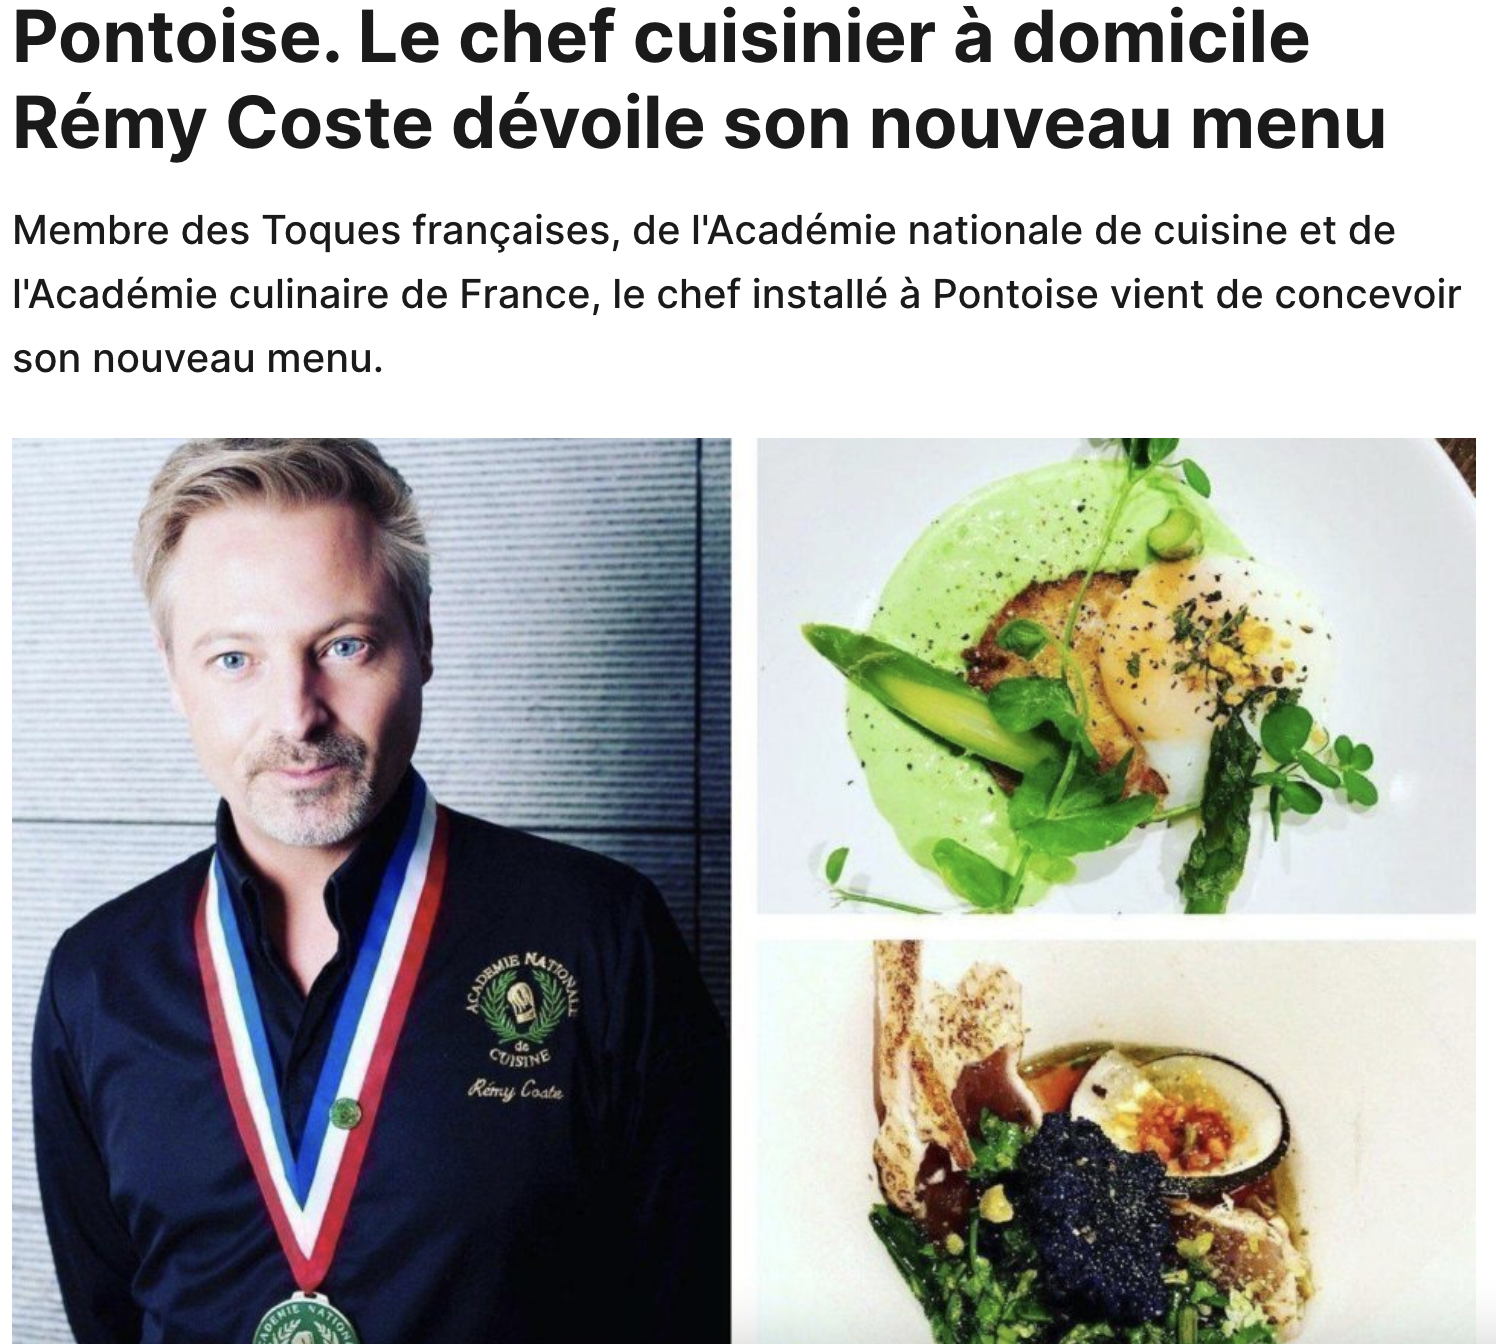 Pontoise. Home chef Rémy Coste unveils his new menu